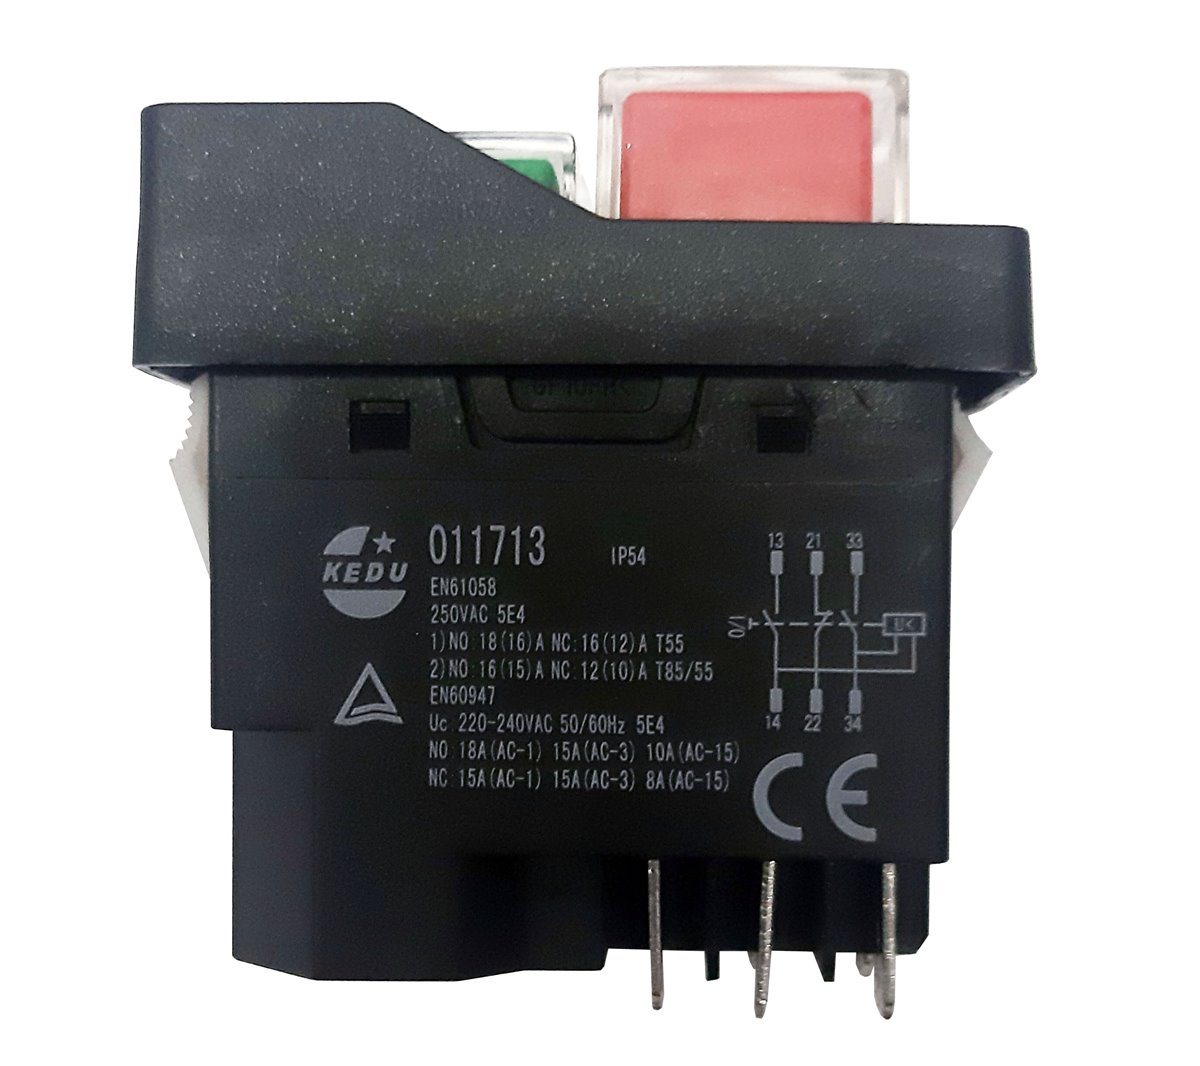 19.1 Schalter Geräteschalter Switch für ATIKA Tischkreissäge T 250 ECO-2 